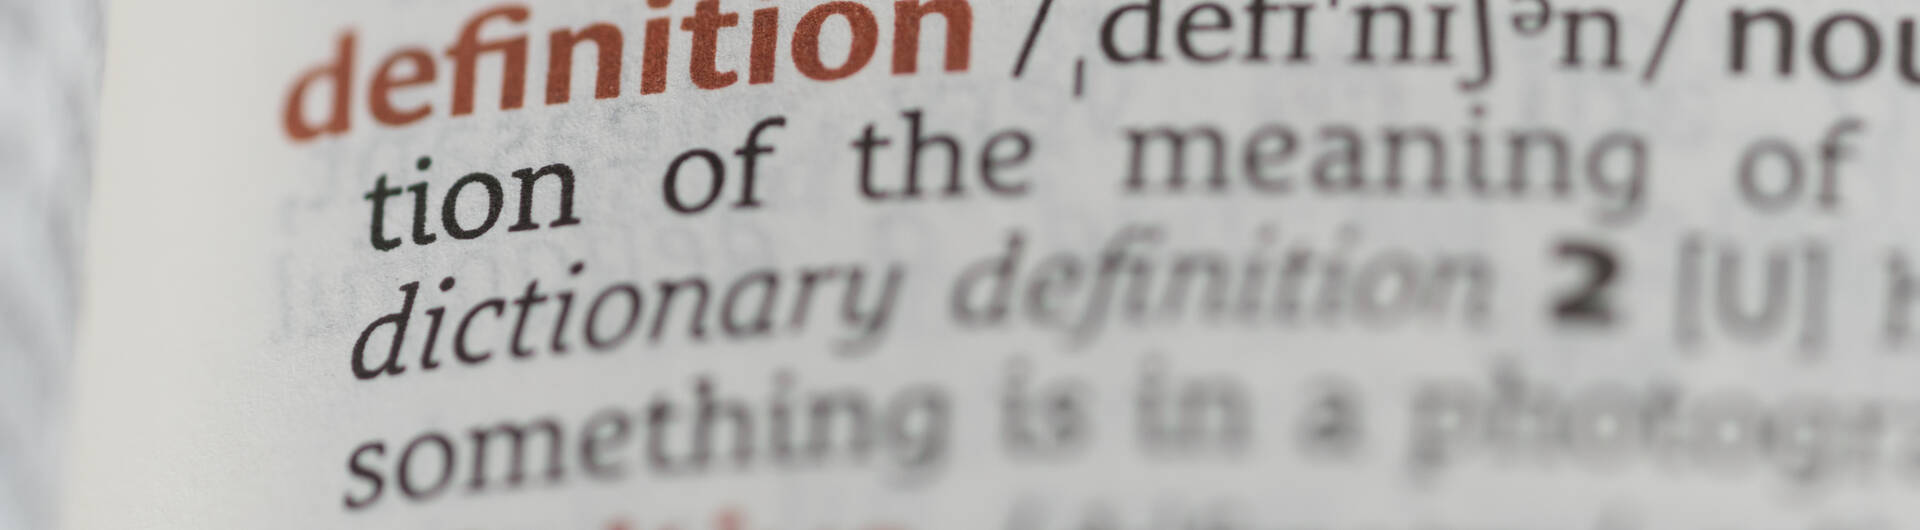 Wörterbuch mit dem Eintrag "Definition"